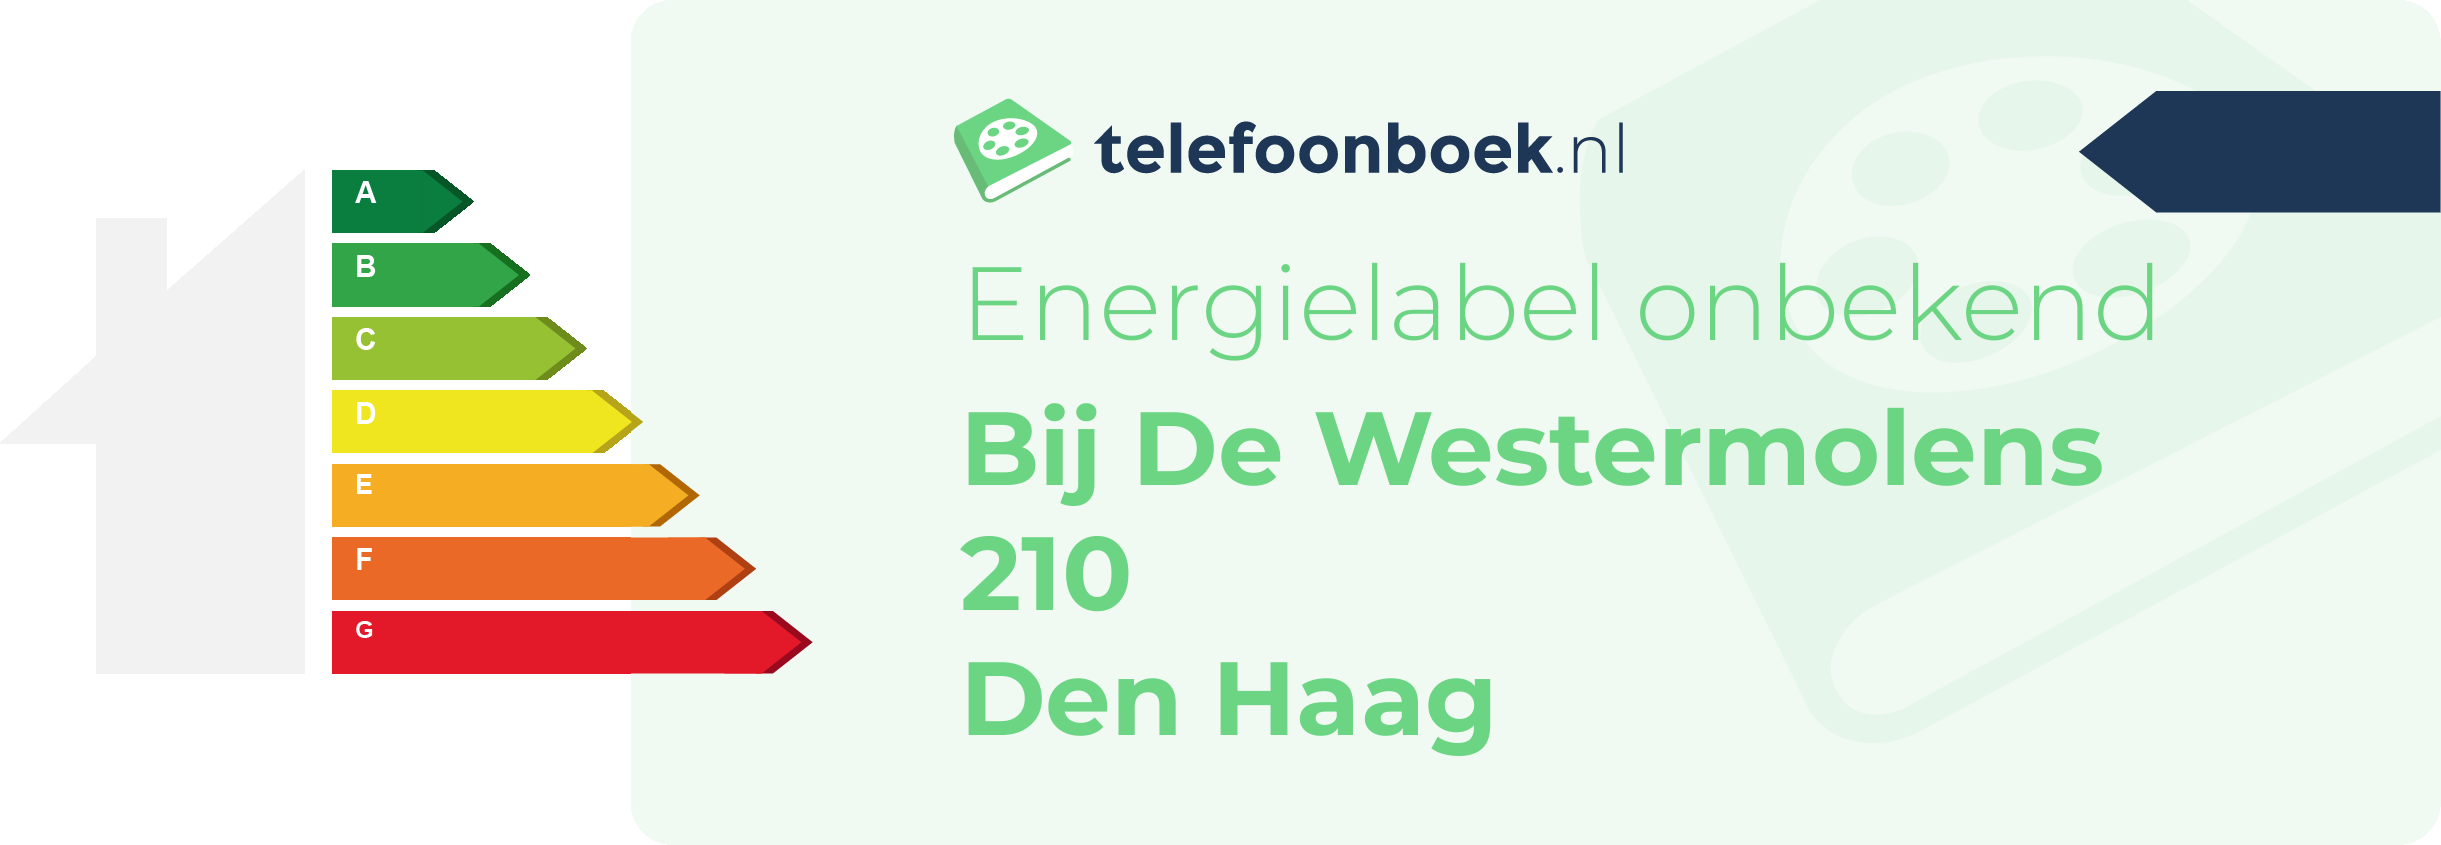 Energielabel Bij De Westermolens 210 Den Haag